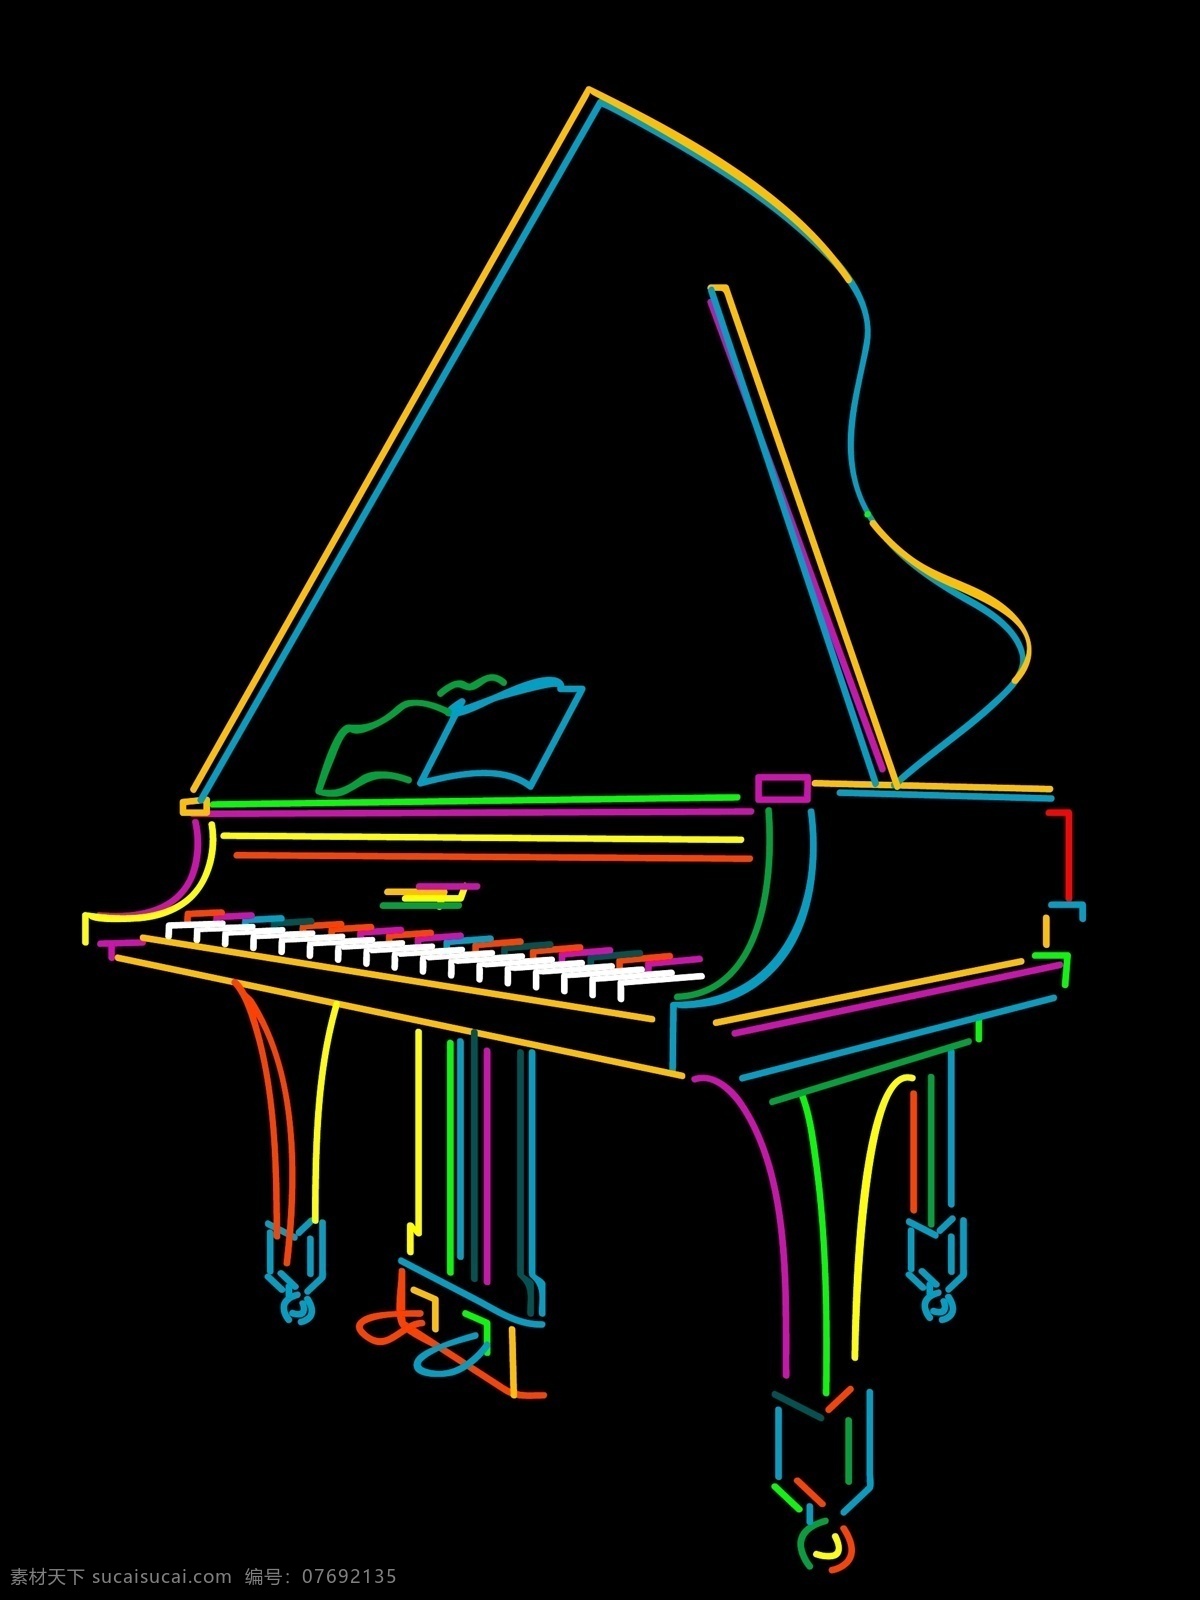 彩色线条钢琴 彩色 动感 线条 钢琴 乐器 音乐 幻彩 霓虹灯 矢量素材 舞蹈音乐 文化艺术 矢量